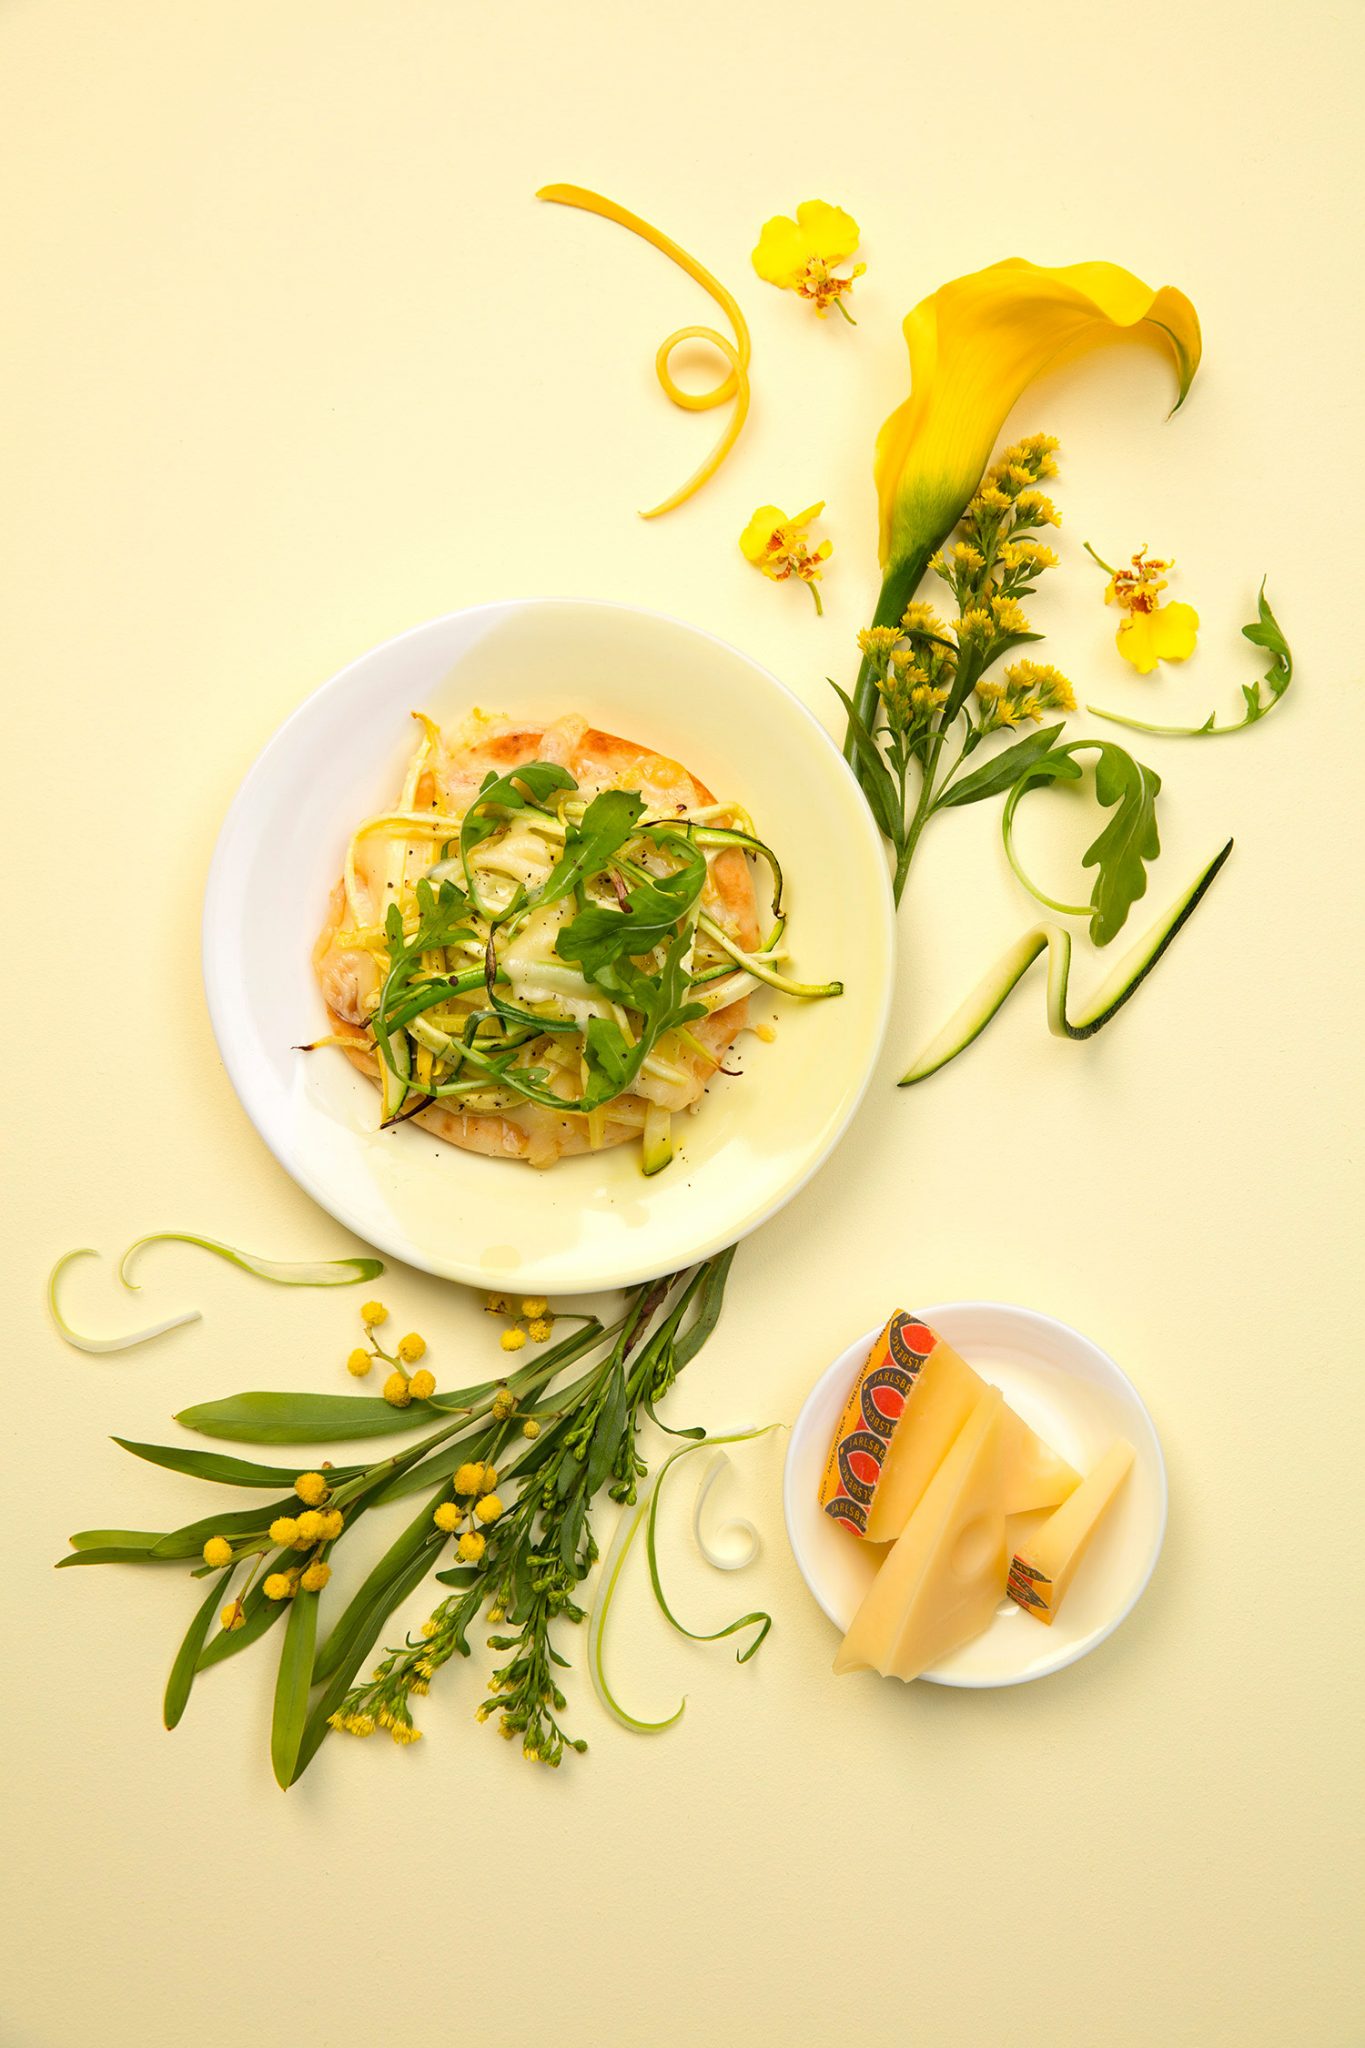 Les Garçons创意美食摄影